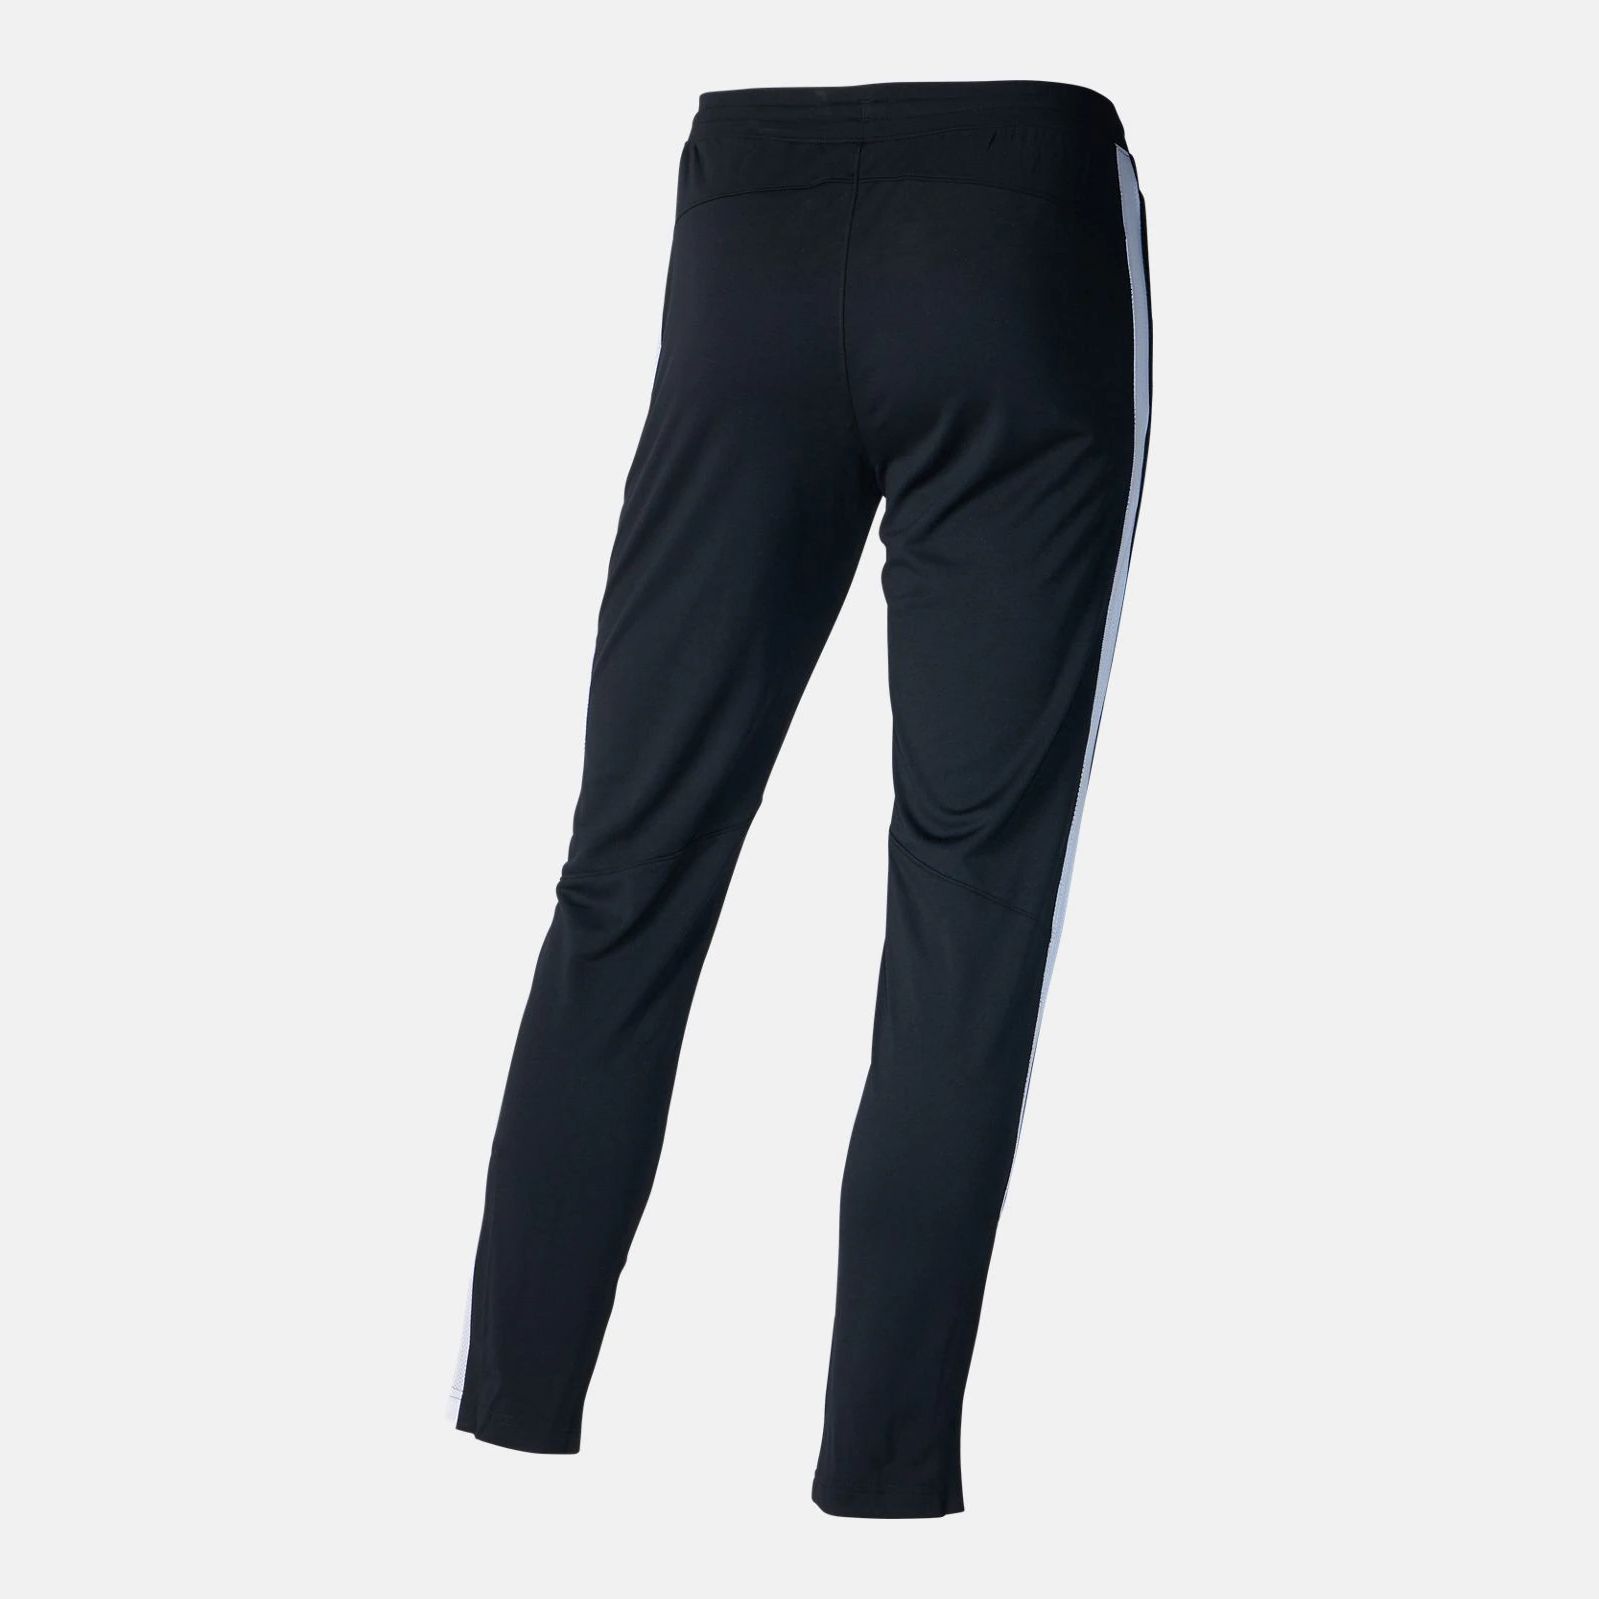 Joggers & Sweatpants -  under armour Sportstyle Pique Pants 3201